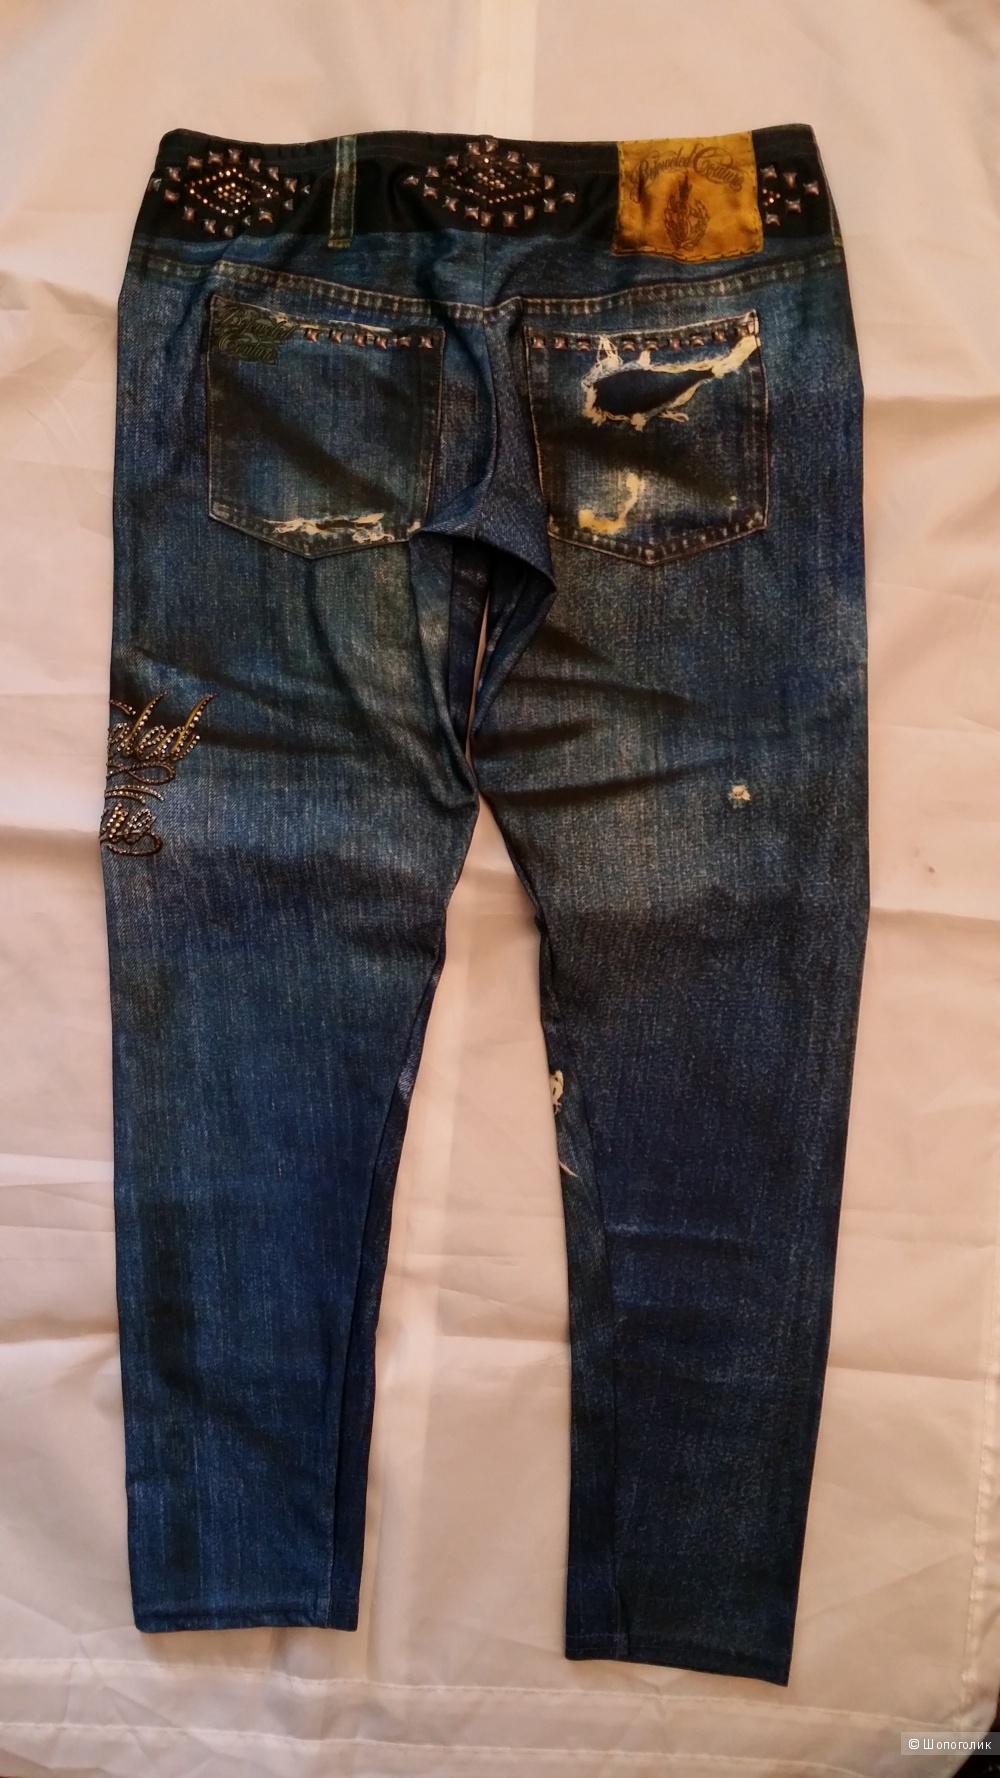 Леггинсы Bejeweled Leggins размер L (46 -48 размер) made in USA, под винтажные джинсы